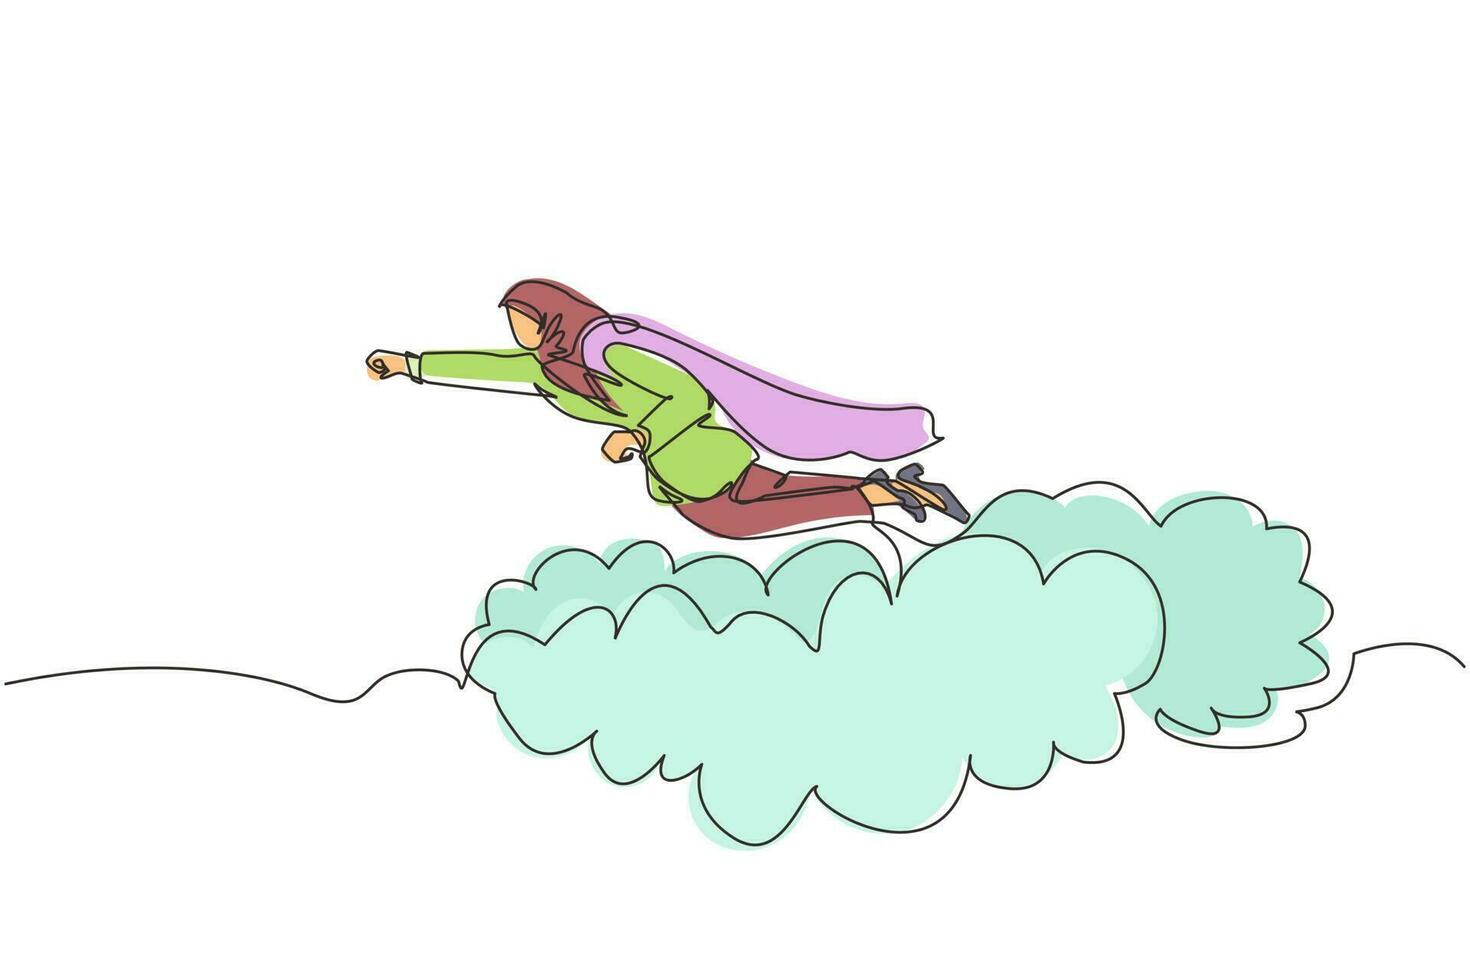 kontinuerlig en rad ritning arabisk affärskvinna superhjälte flyger upp och lämnar moln av damm. superarbetare i mantel tar av. kraft och unikhet affärsidé. enda linje design vektorgrafik vektor